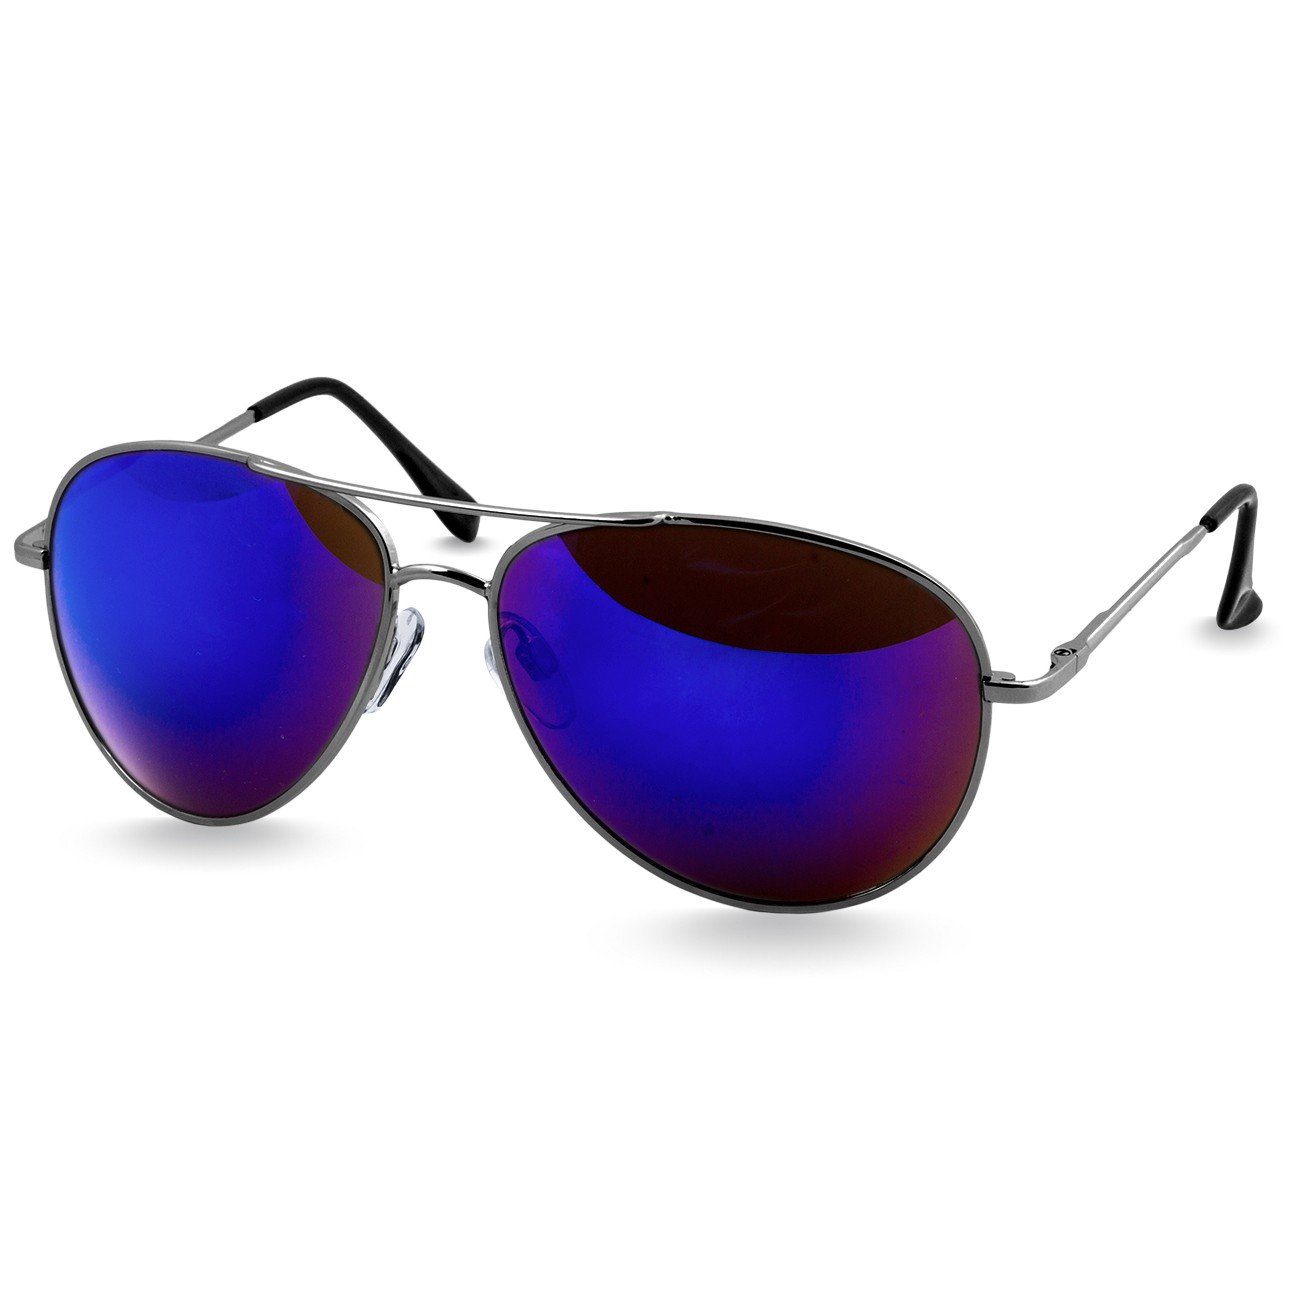 Caspar Sonnenbrille SG013 klassische Unisex Retro Pilotenbrille silber / blau verspiegelt